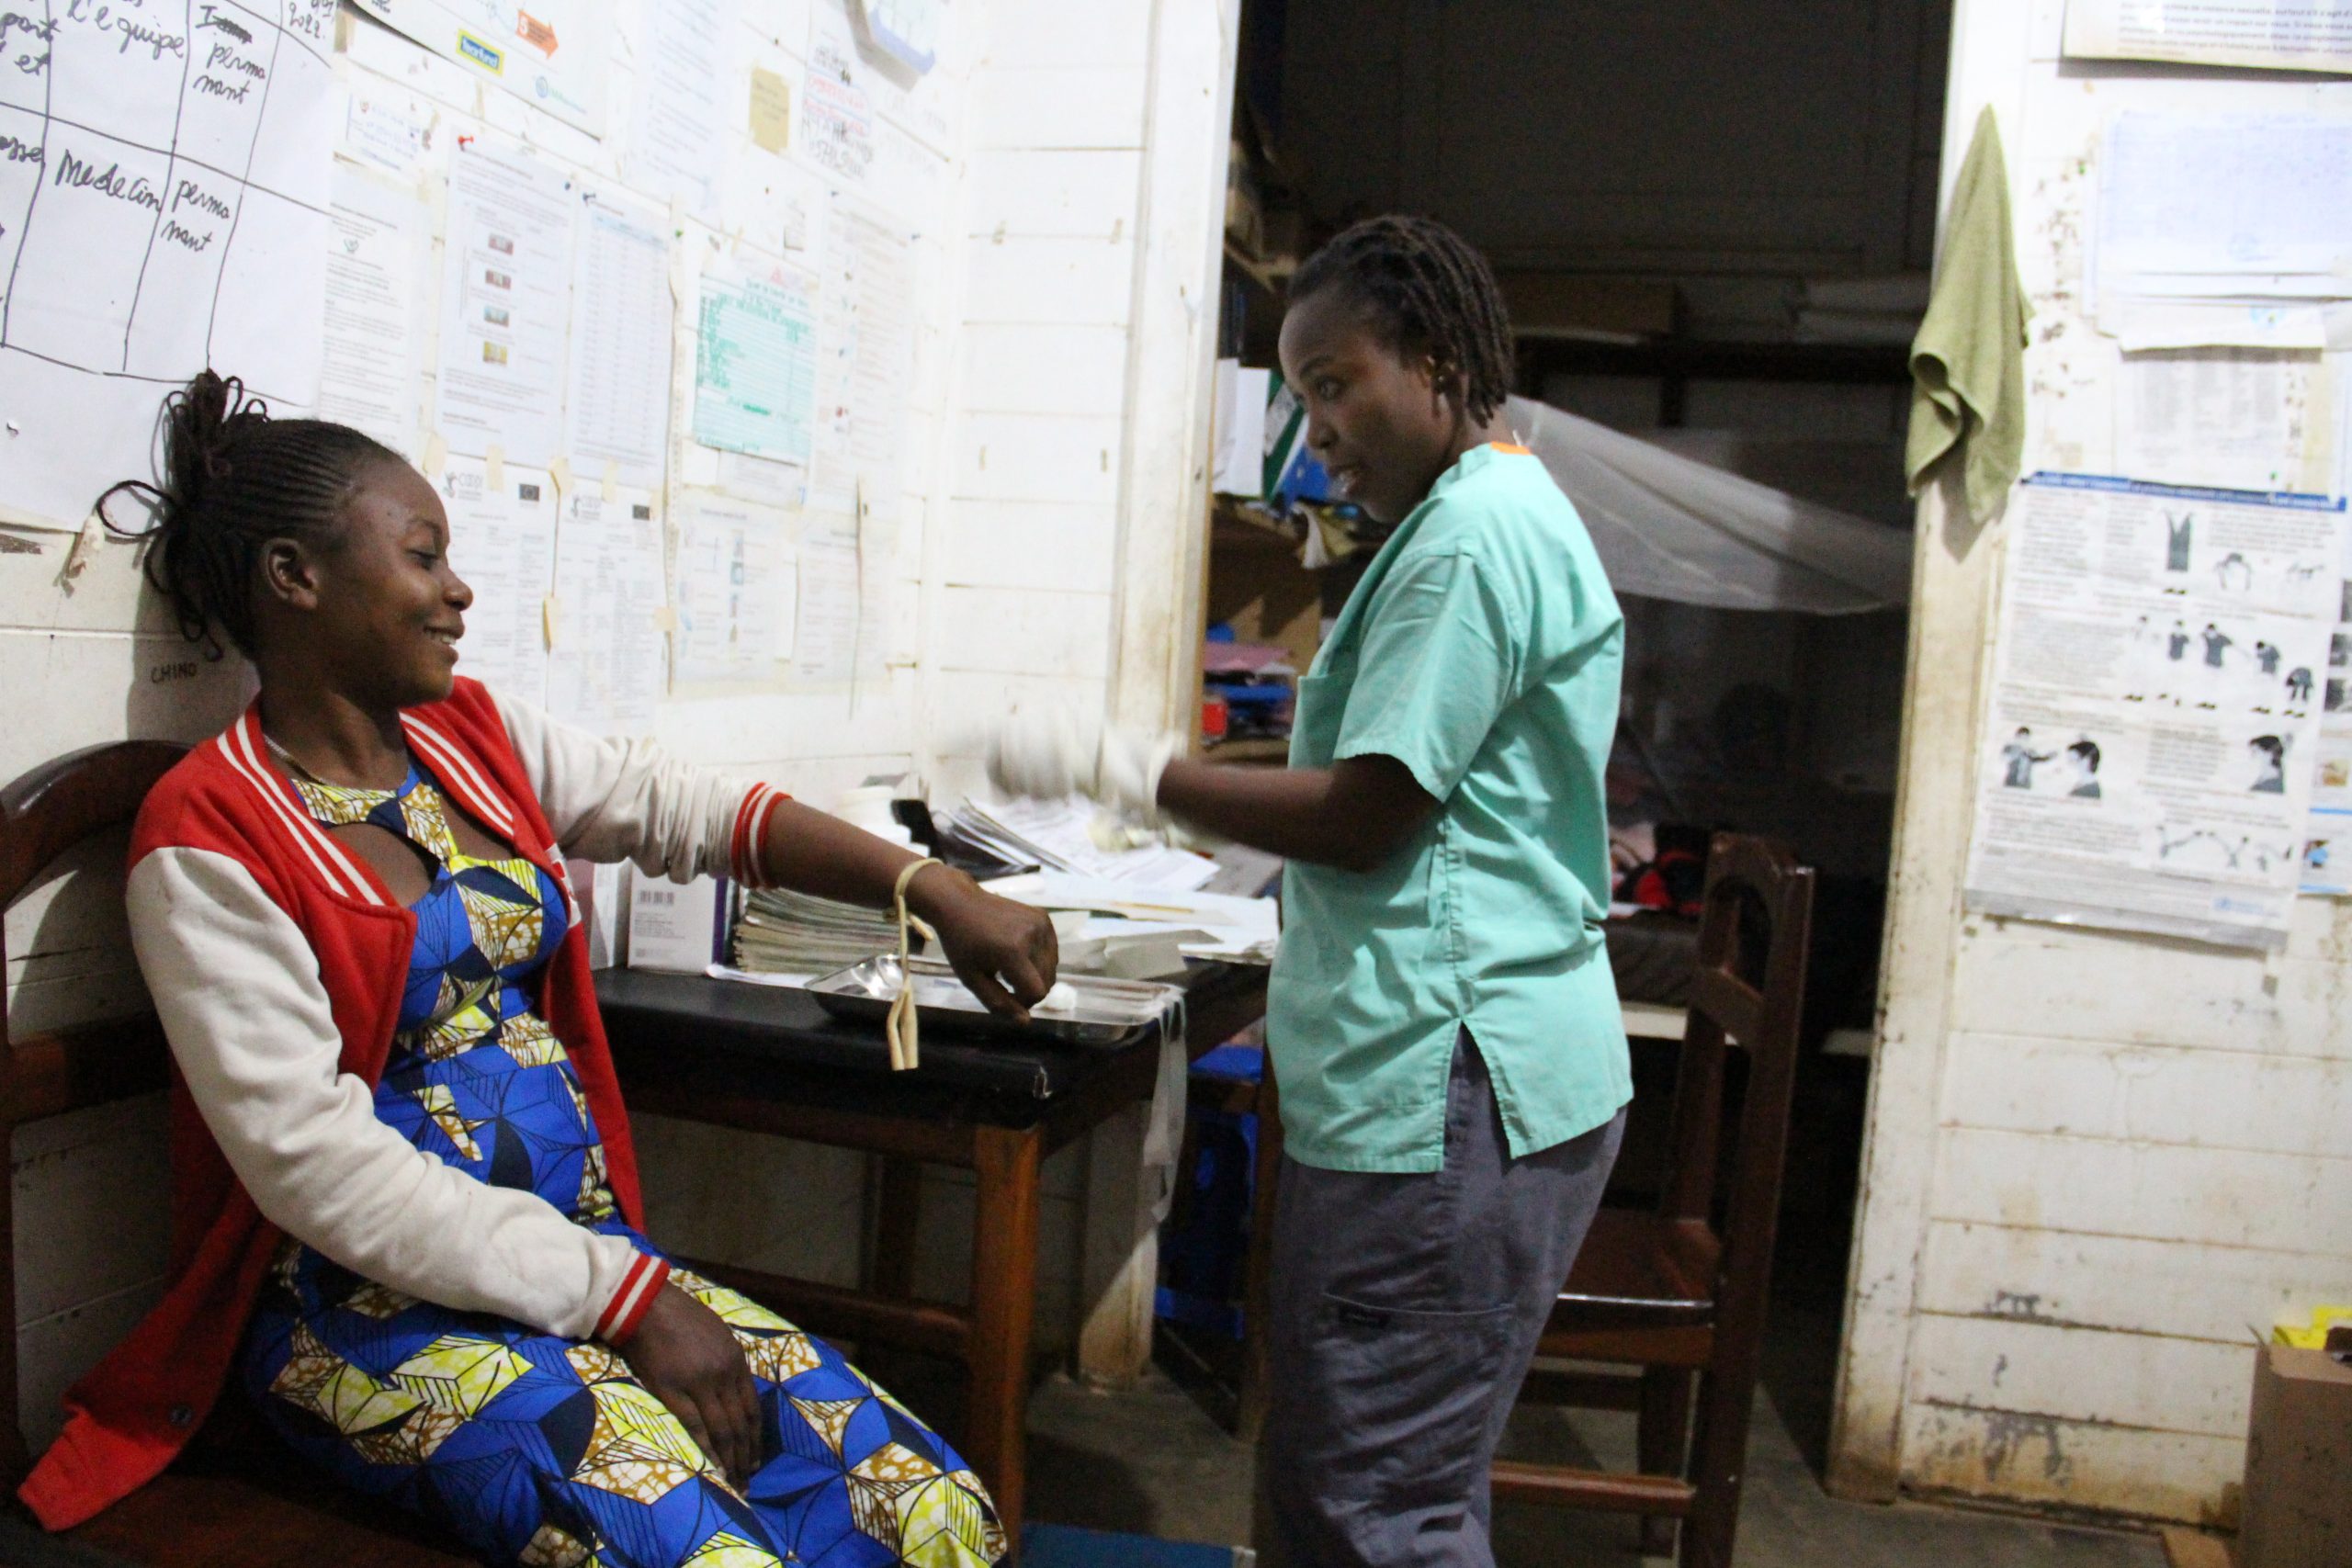 الممرض ألفونسين كاتسونغو يتفقد مريضا ليليا تحت الأضواء الساطعة في مرفق بويكين الصحي في بيني بجمهورية الكونغو الديمقراطية.